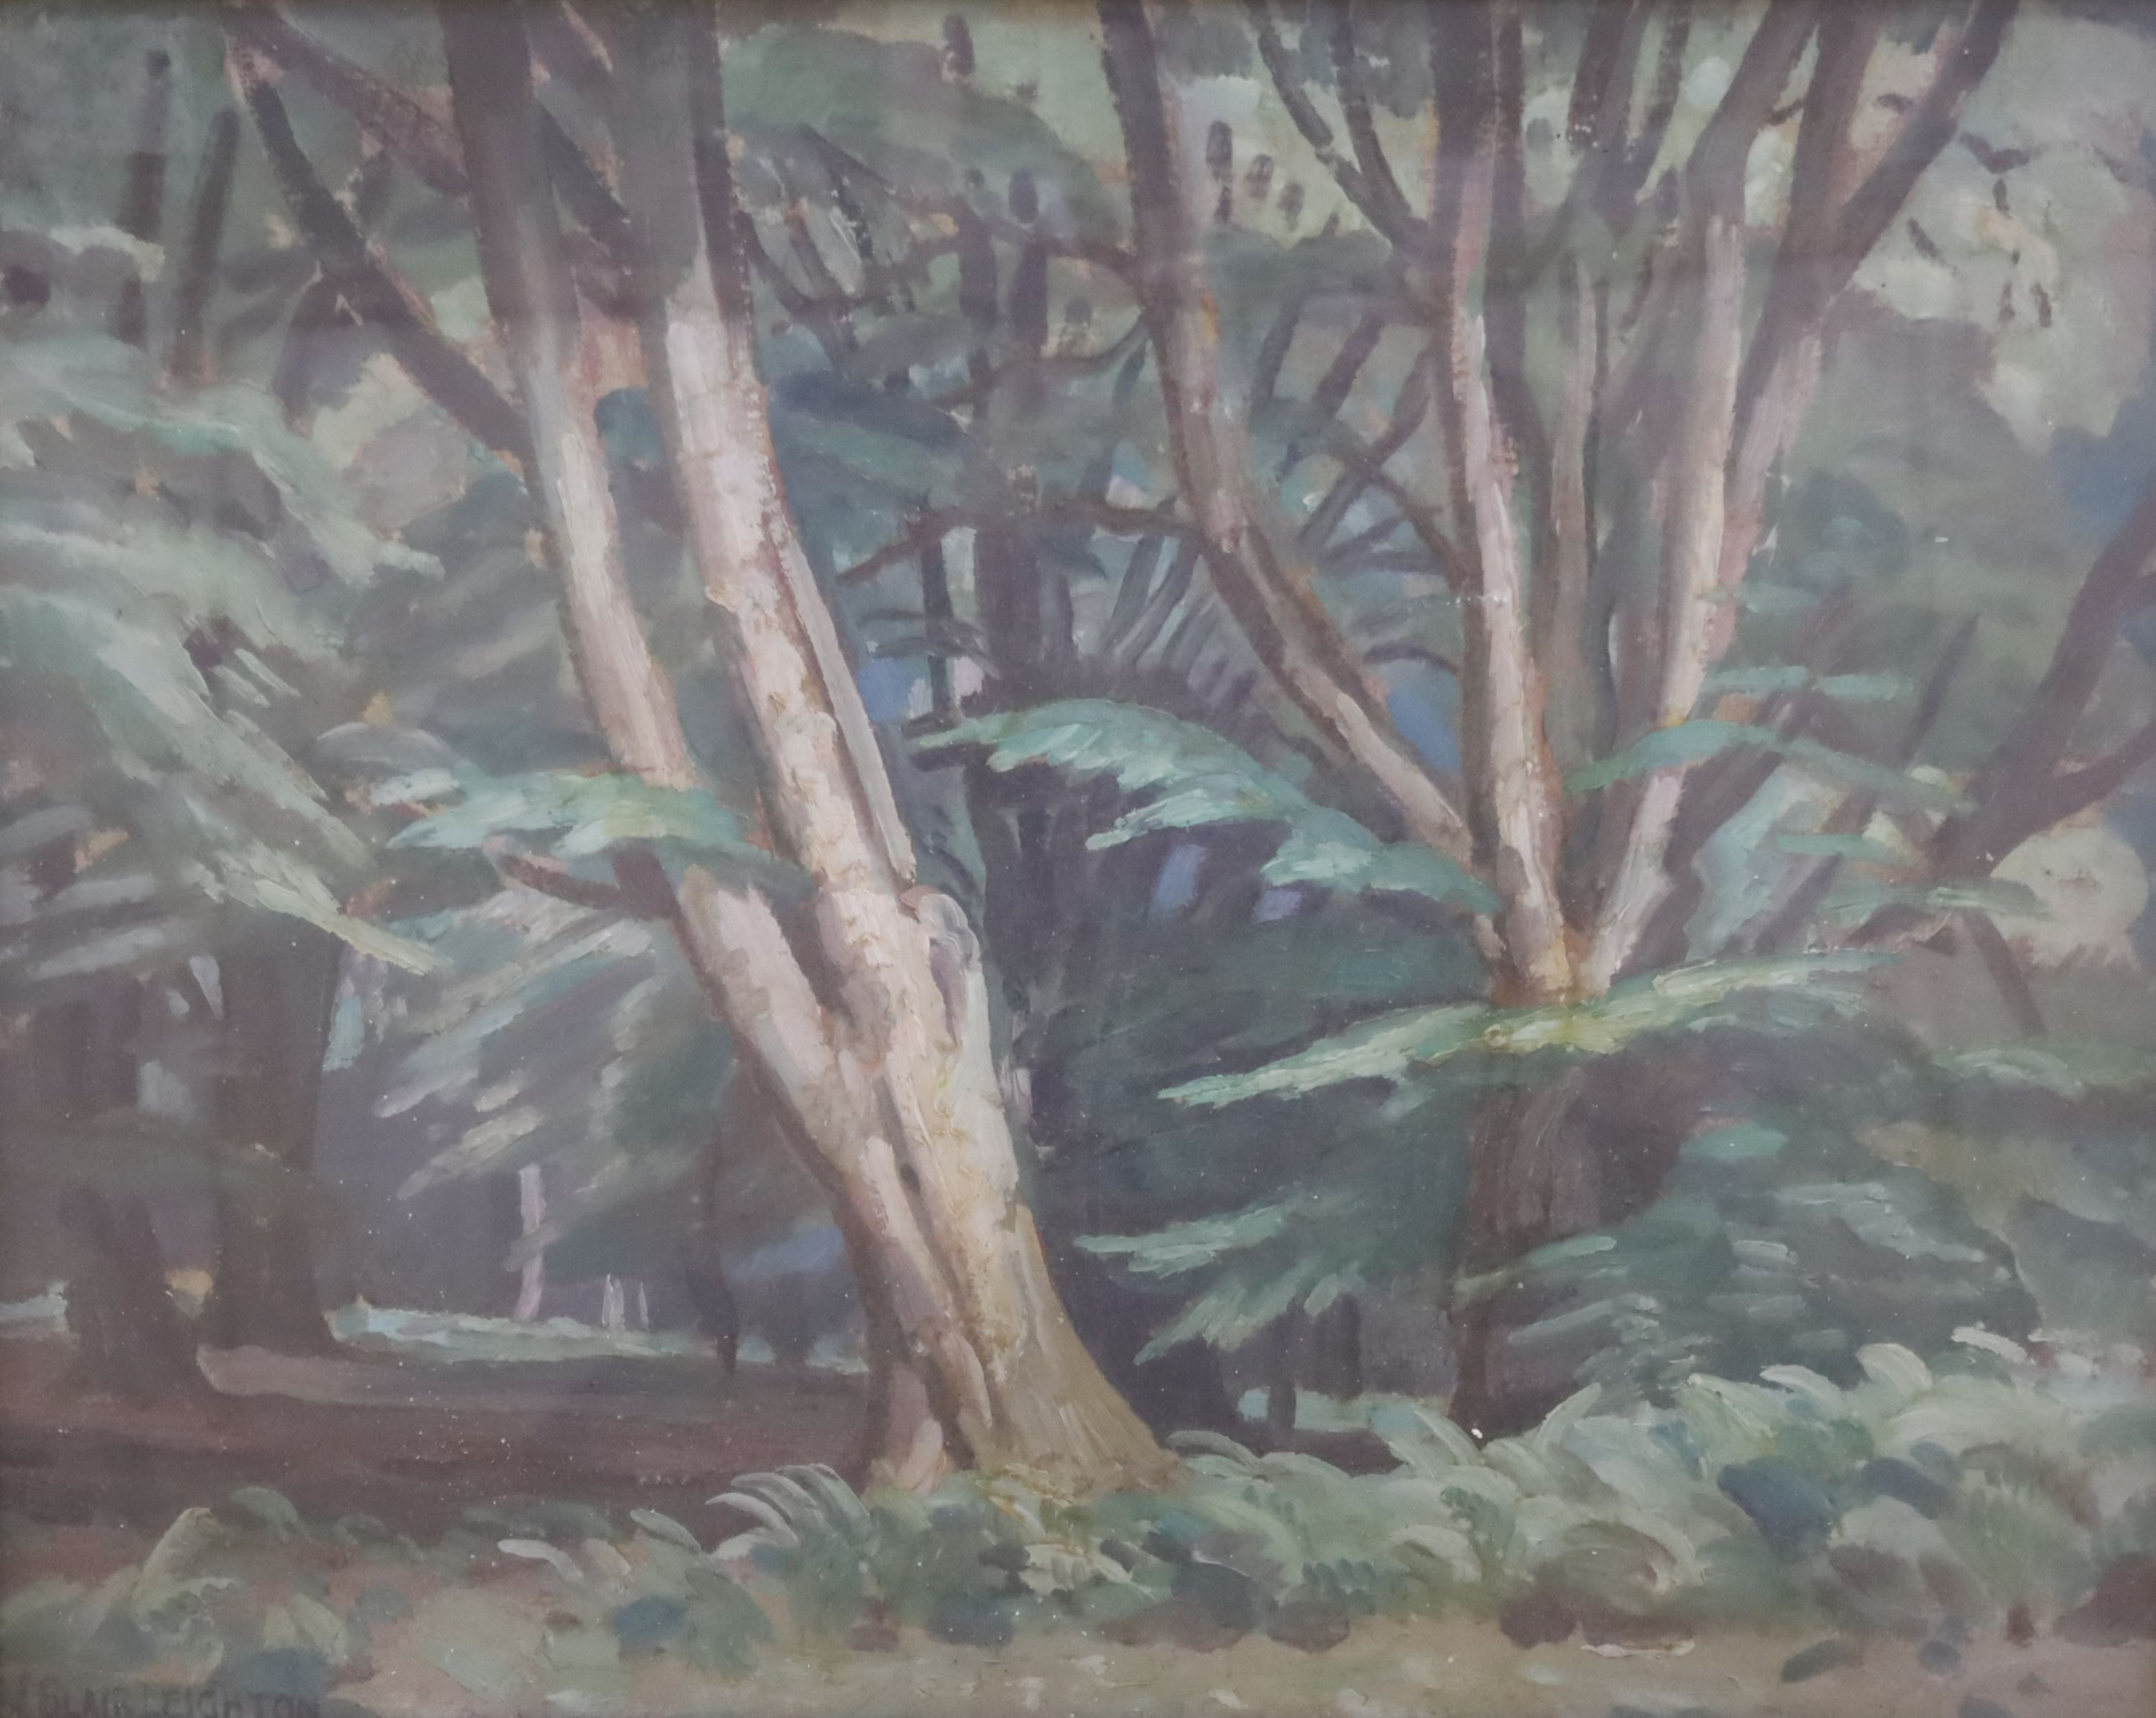 J. Blair Leighton (Exh.1914-39), oil on canvas, Woodland scene, signed, 40 x 50cm